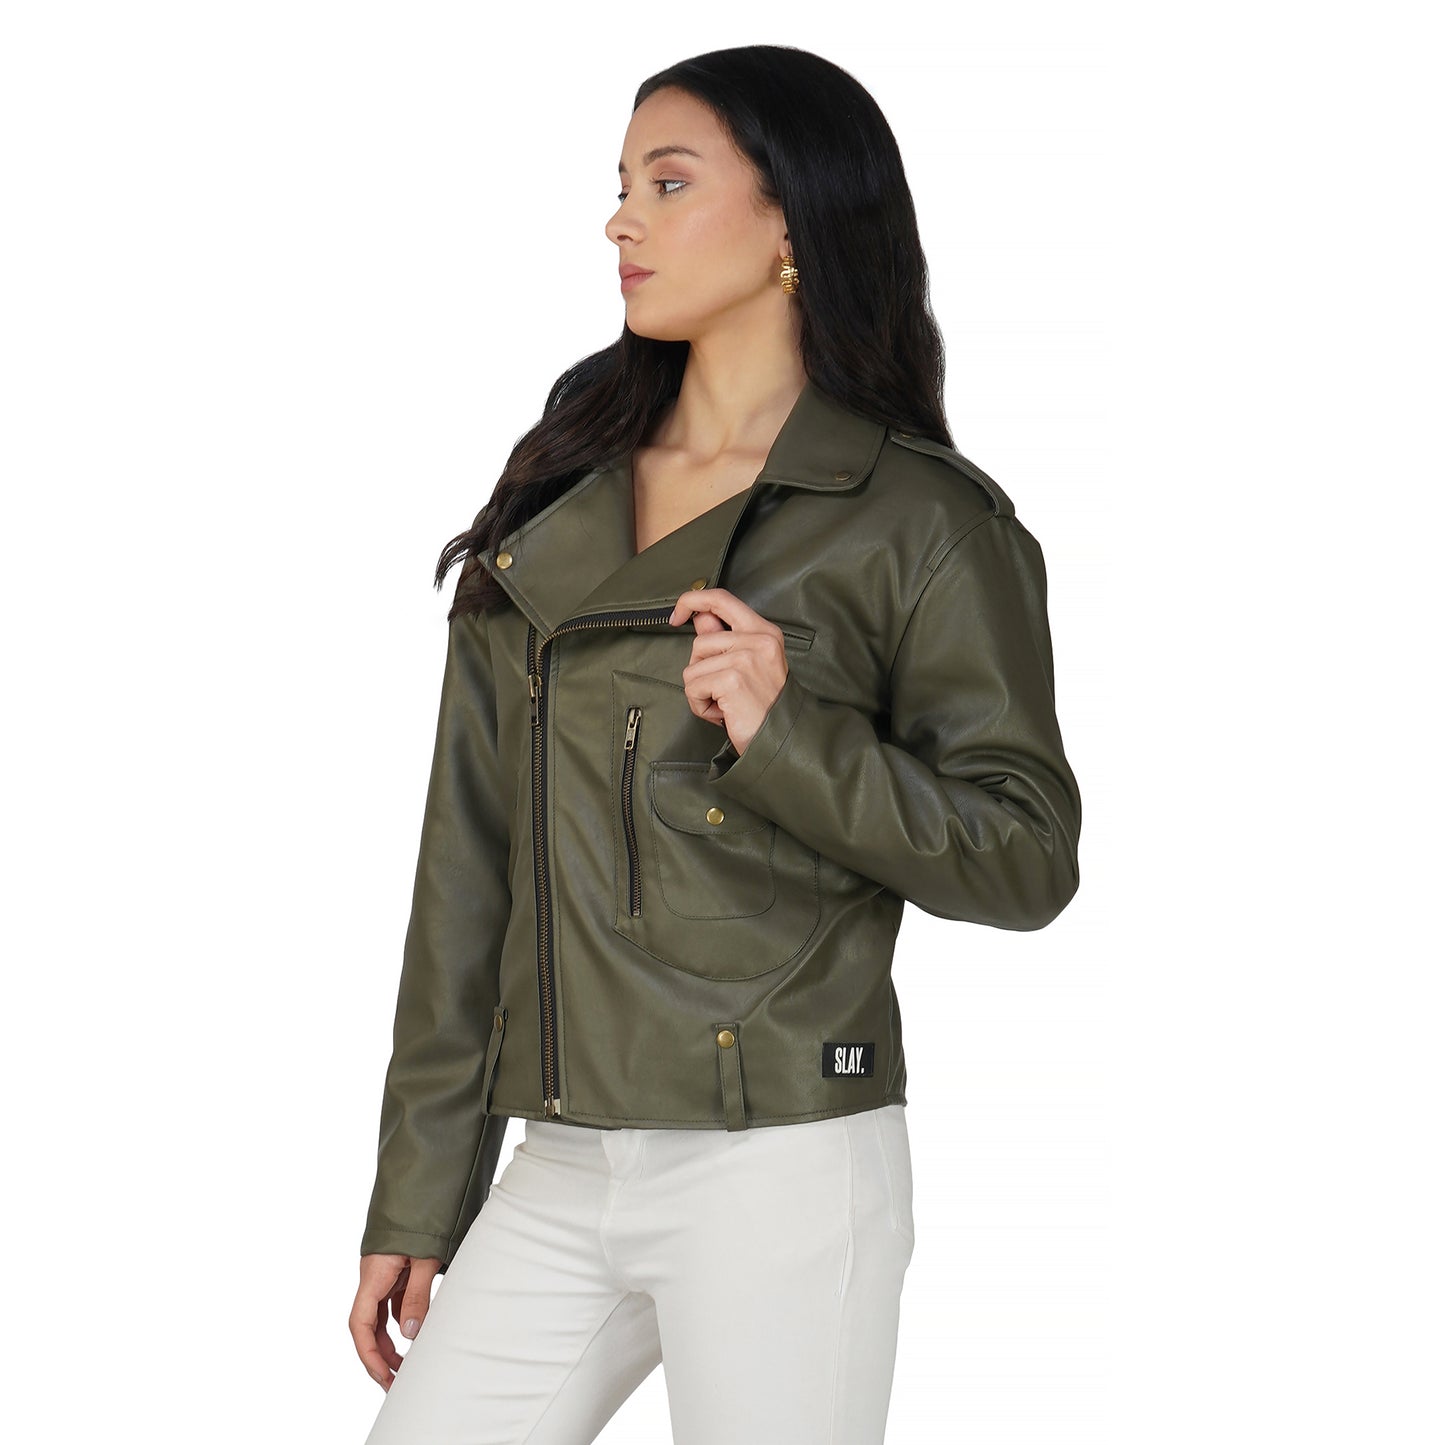 SLAY. Women's Olive Faux Leather Jacket